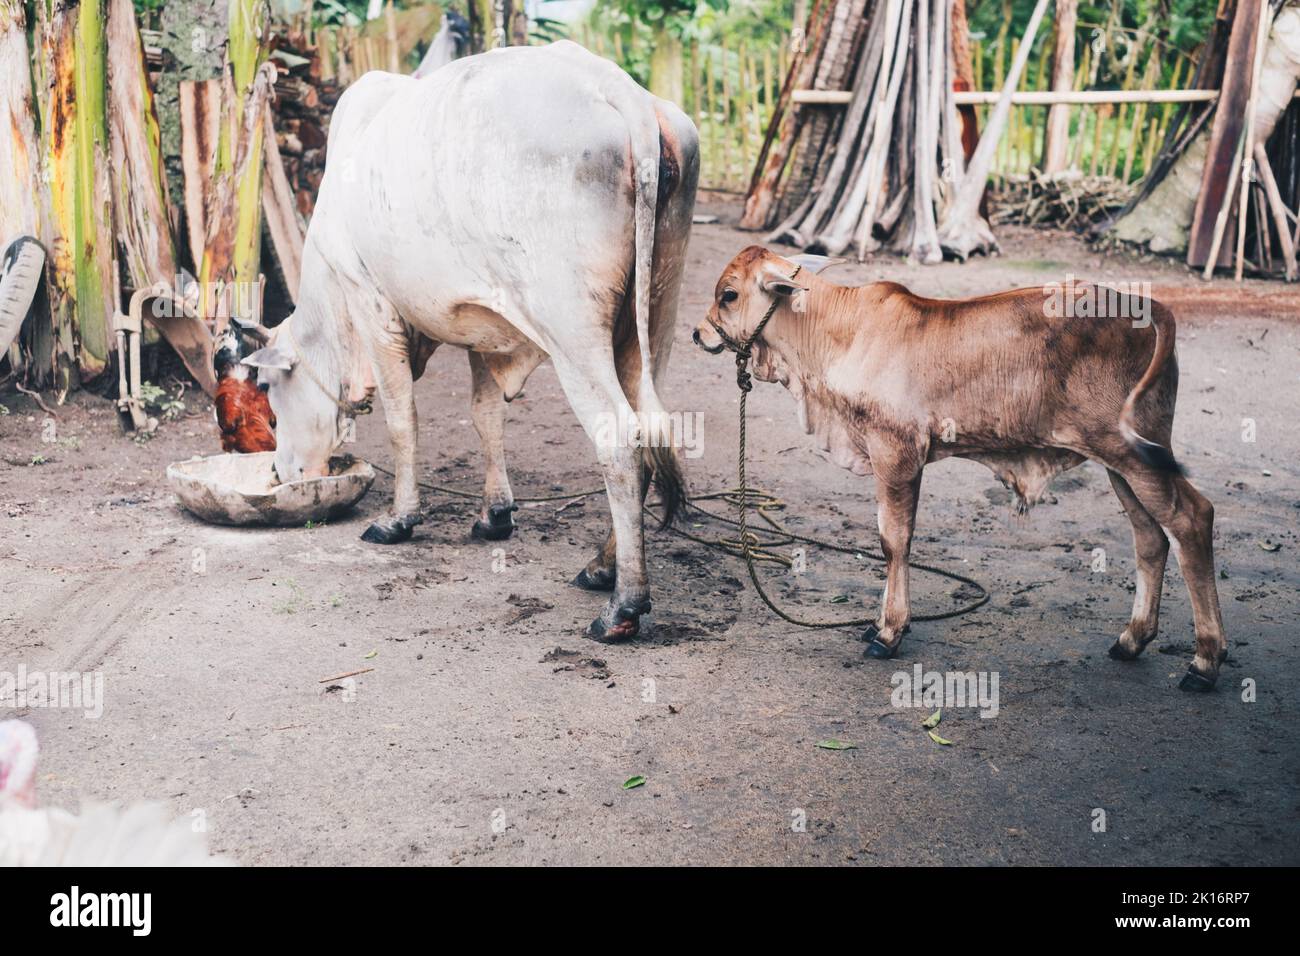 Vache mère de couleur blanche (DAM) mangeant de l'énergie liquide ou de la ration quotidienne dans un grand bassin avec sa progéniture brune (veau) derrière. Banque D'Images